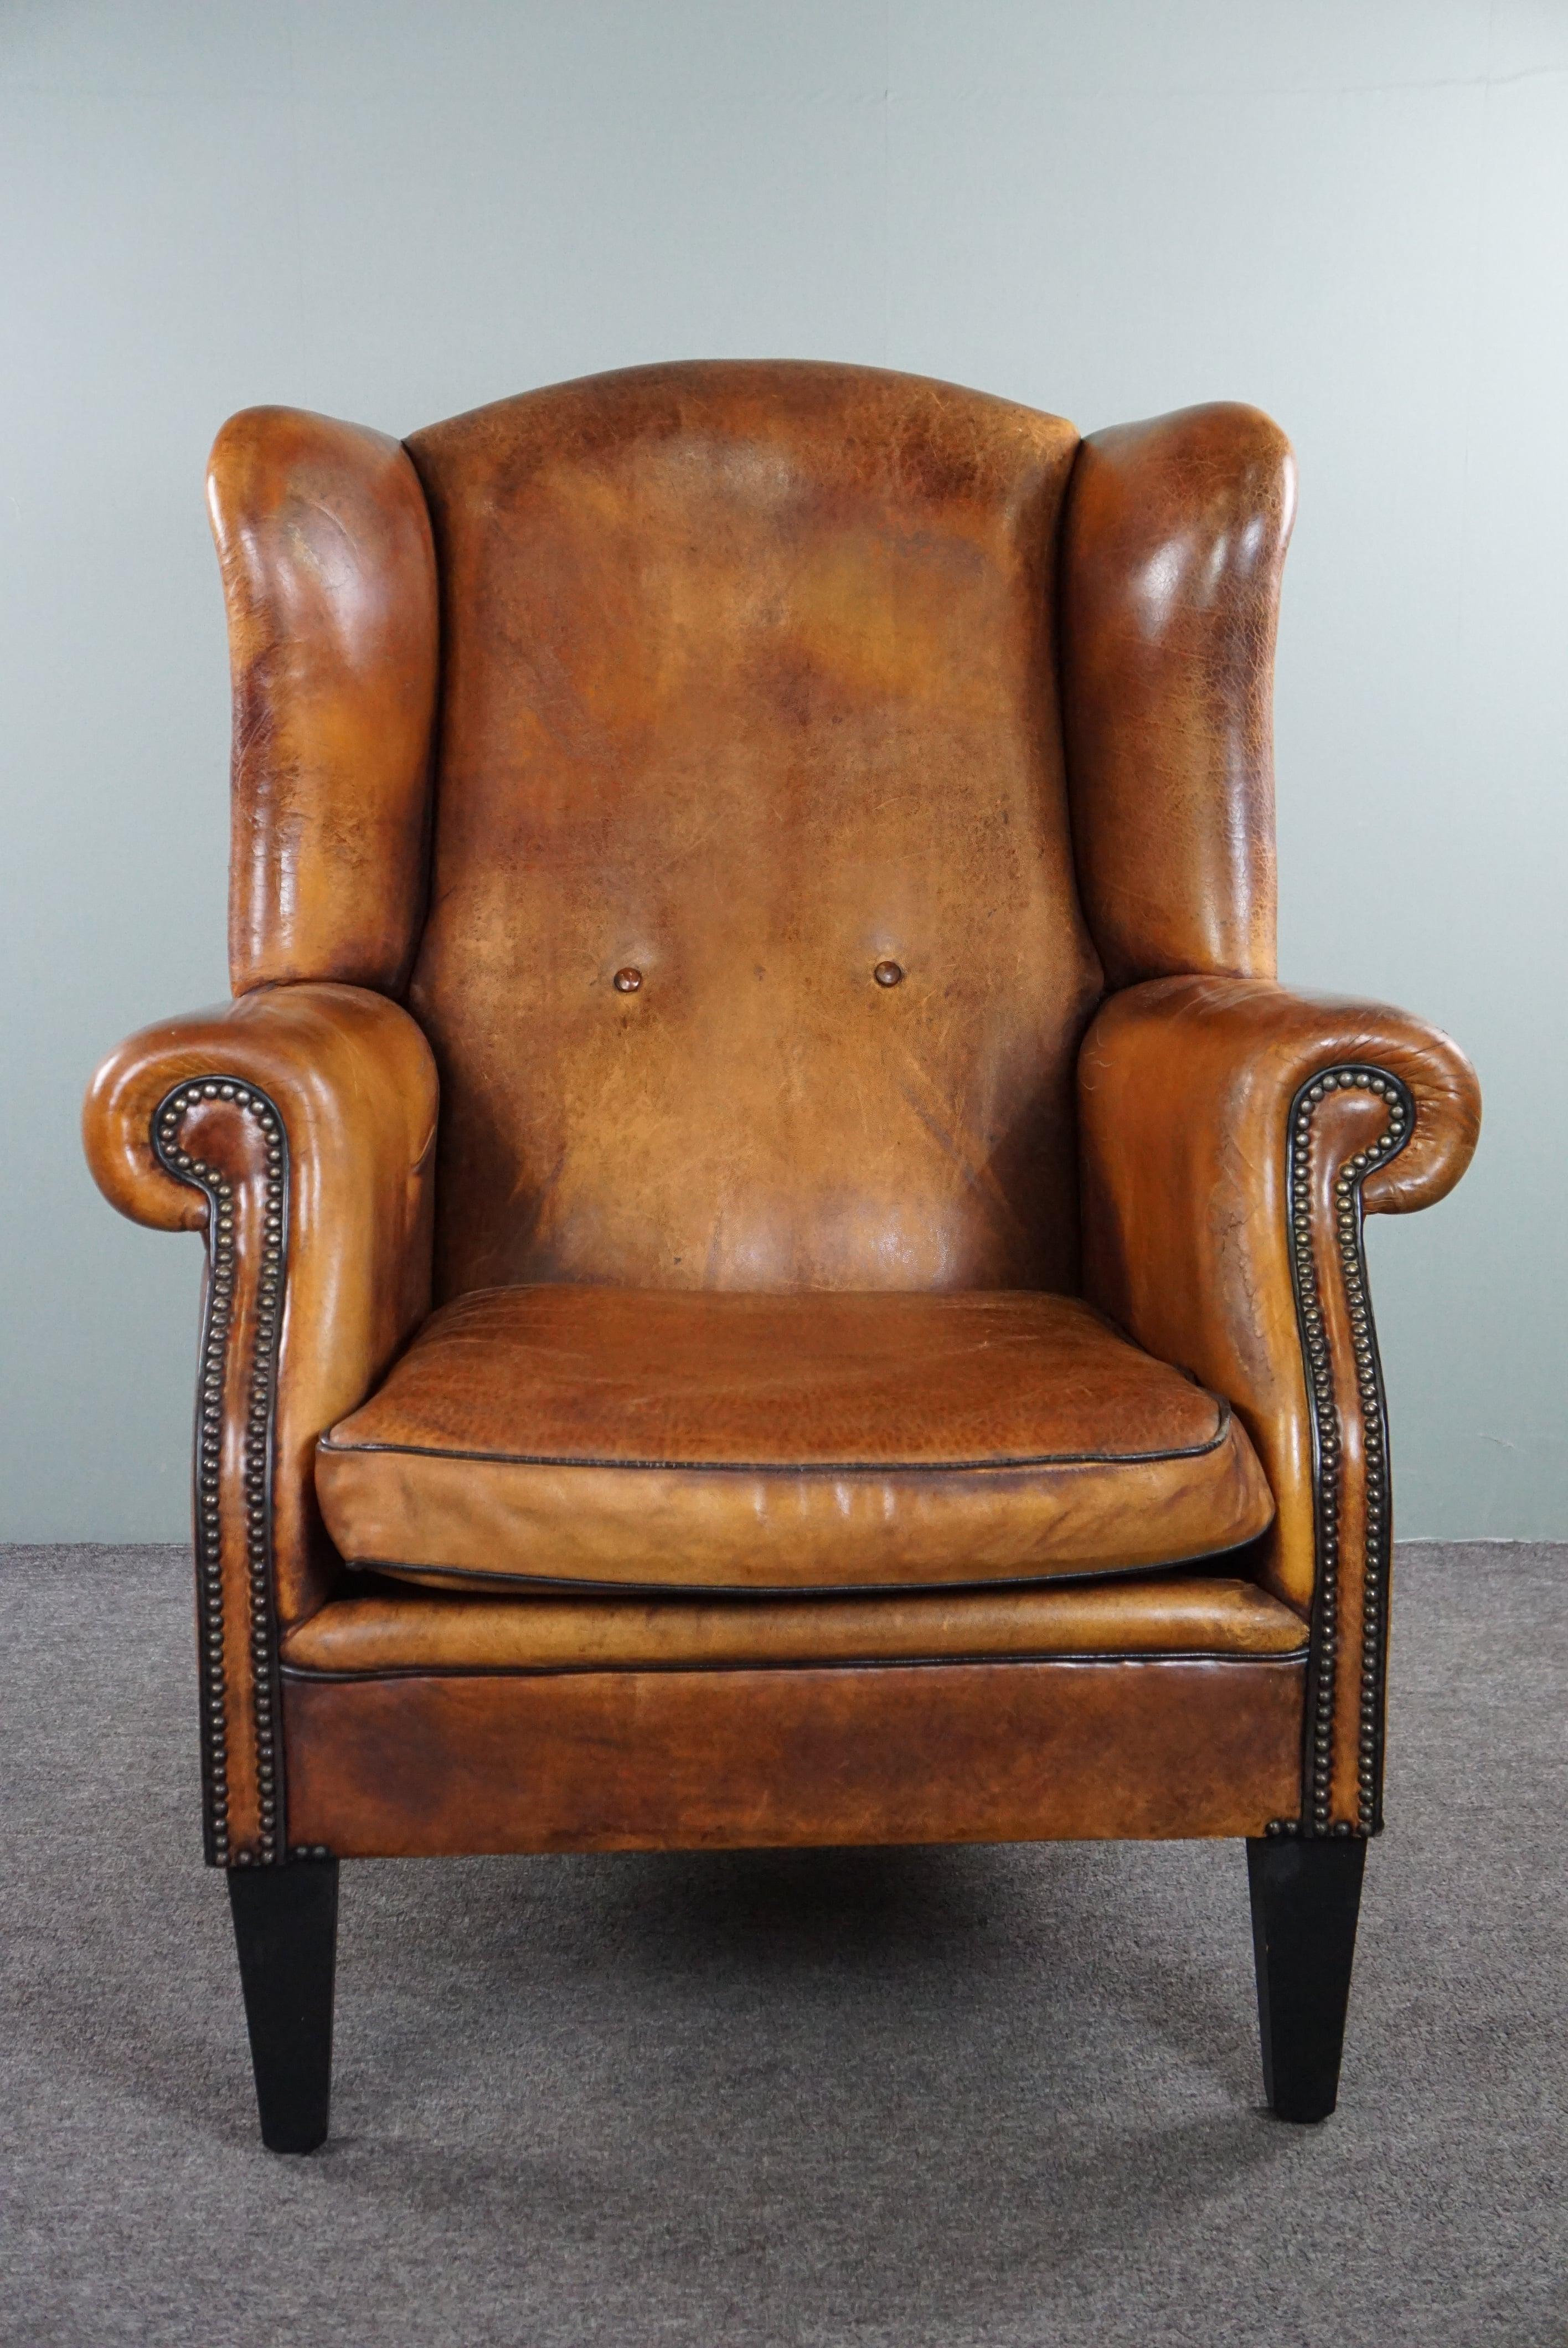 Angeboten wird dieser schöne große und charmante Schafsleder-Sessel mit sehr gutem Sitzkomfort. Wenn Sie auf der Suche nach einem Ohrensessel sind, suchen Sie wahrscheinlich nach einem schönen, charmanten Sessel mit herrlichem Leder, in dem man auch